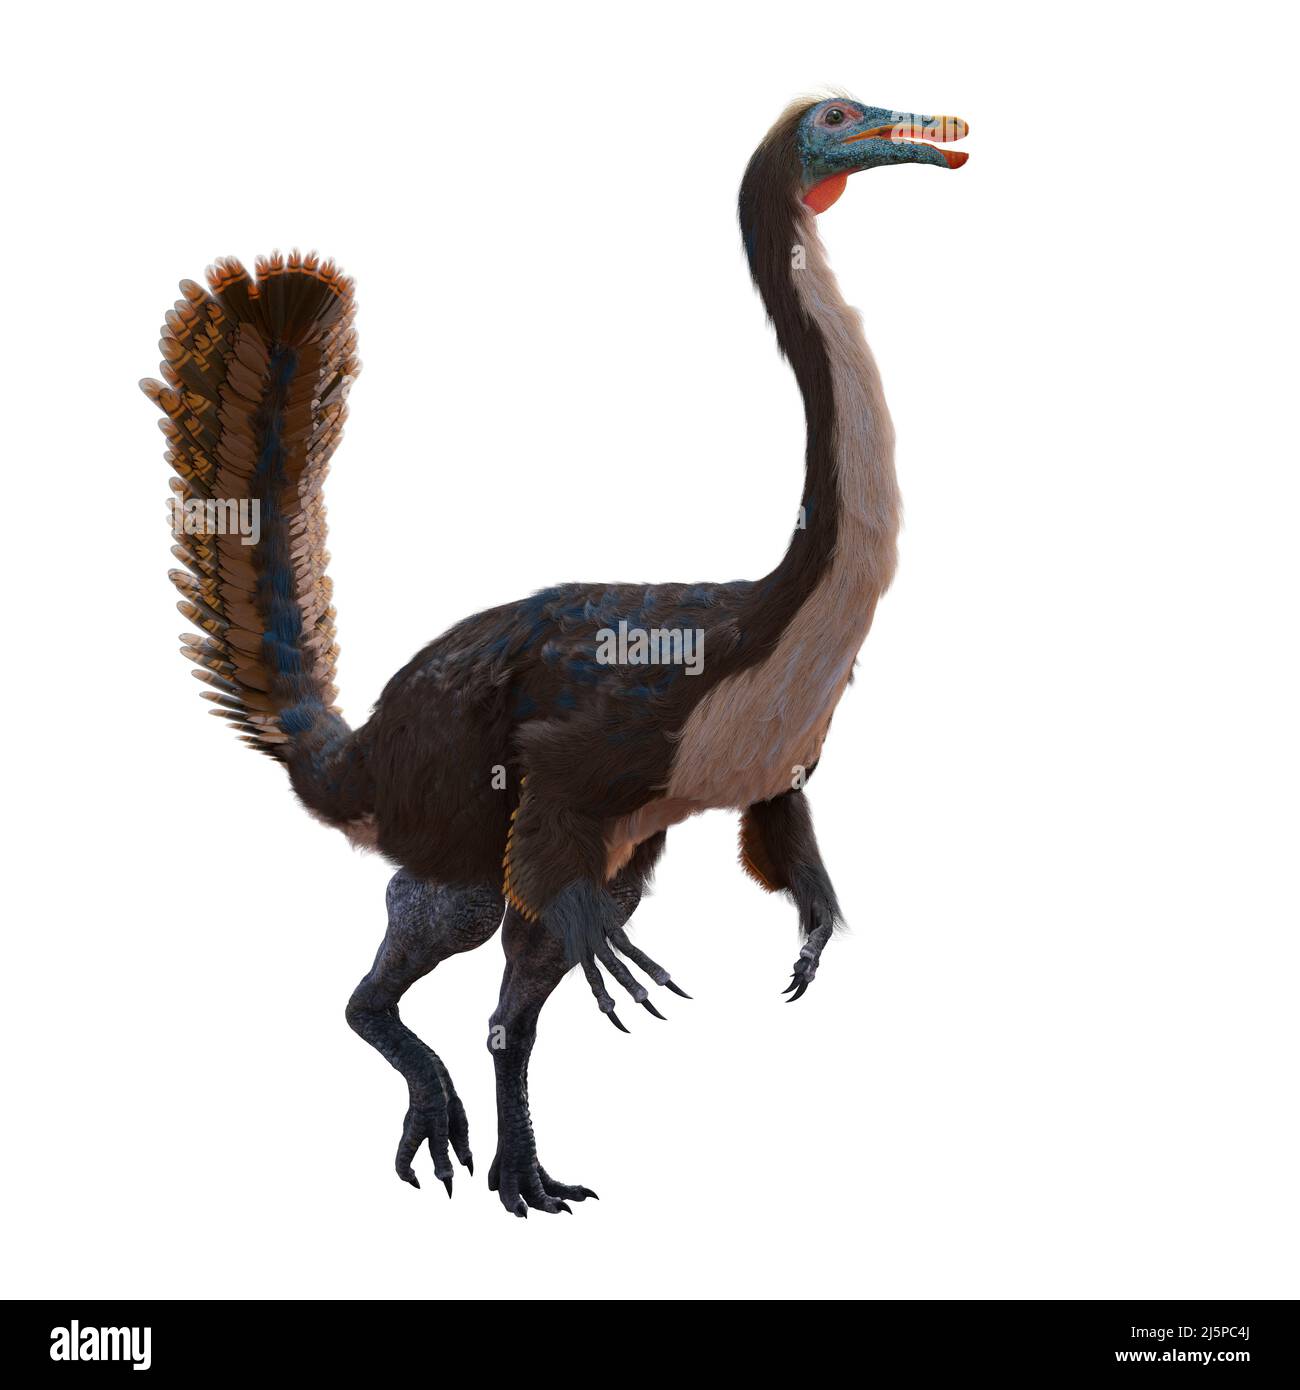 Gallimimus, dinosaure théropode à plumes qui vivait durant la période du Crétacé tardif, isolé sur fond blanc Banque D'Images